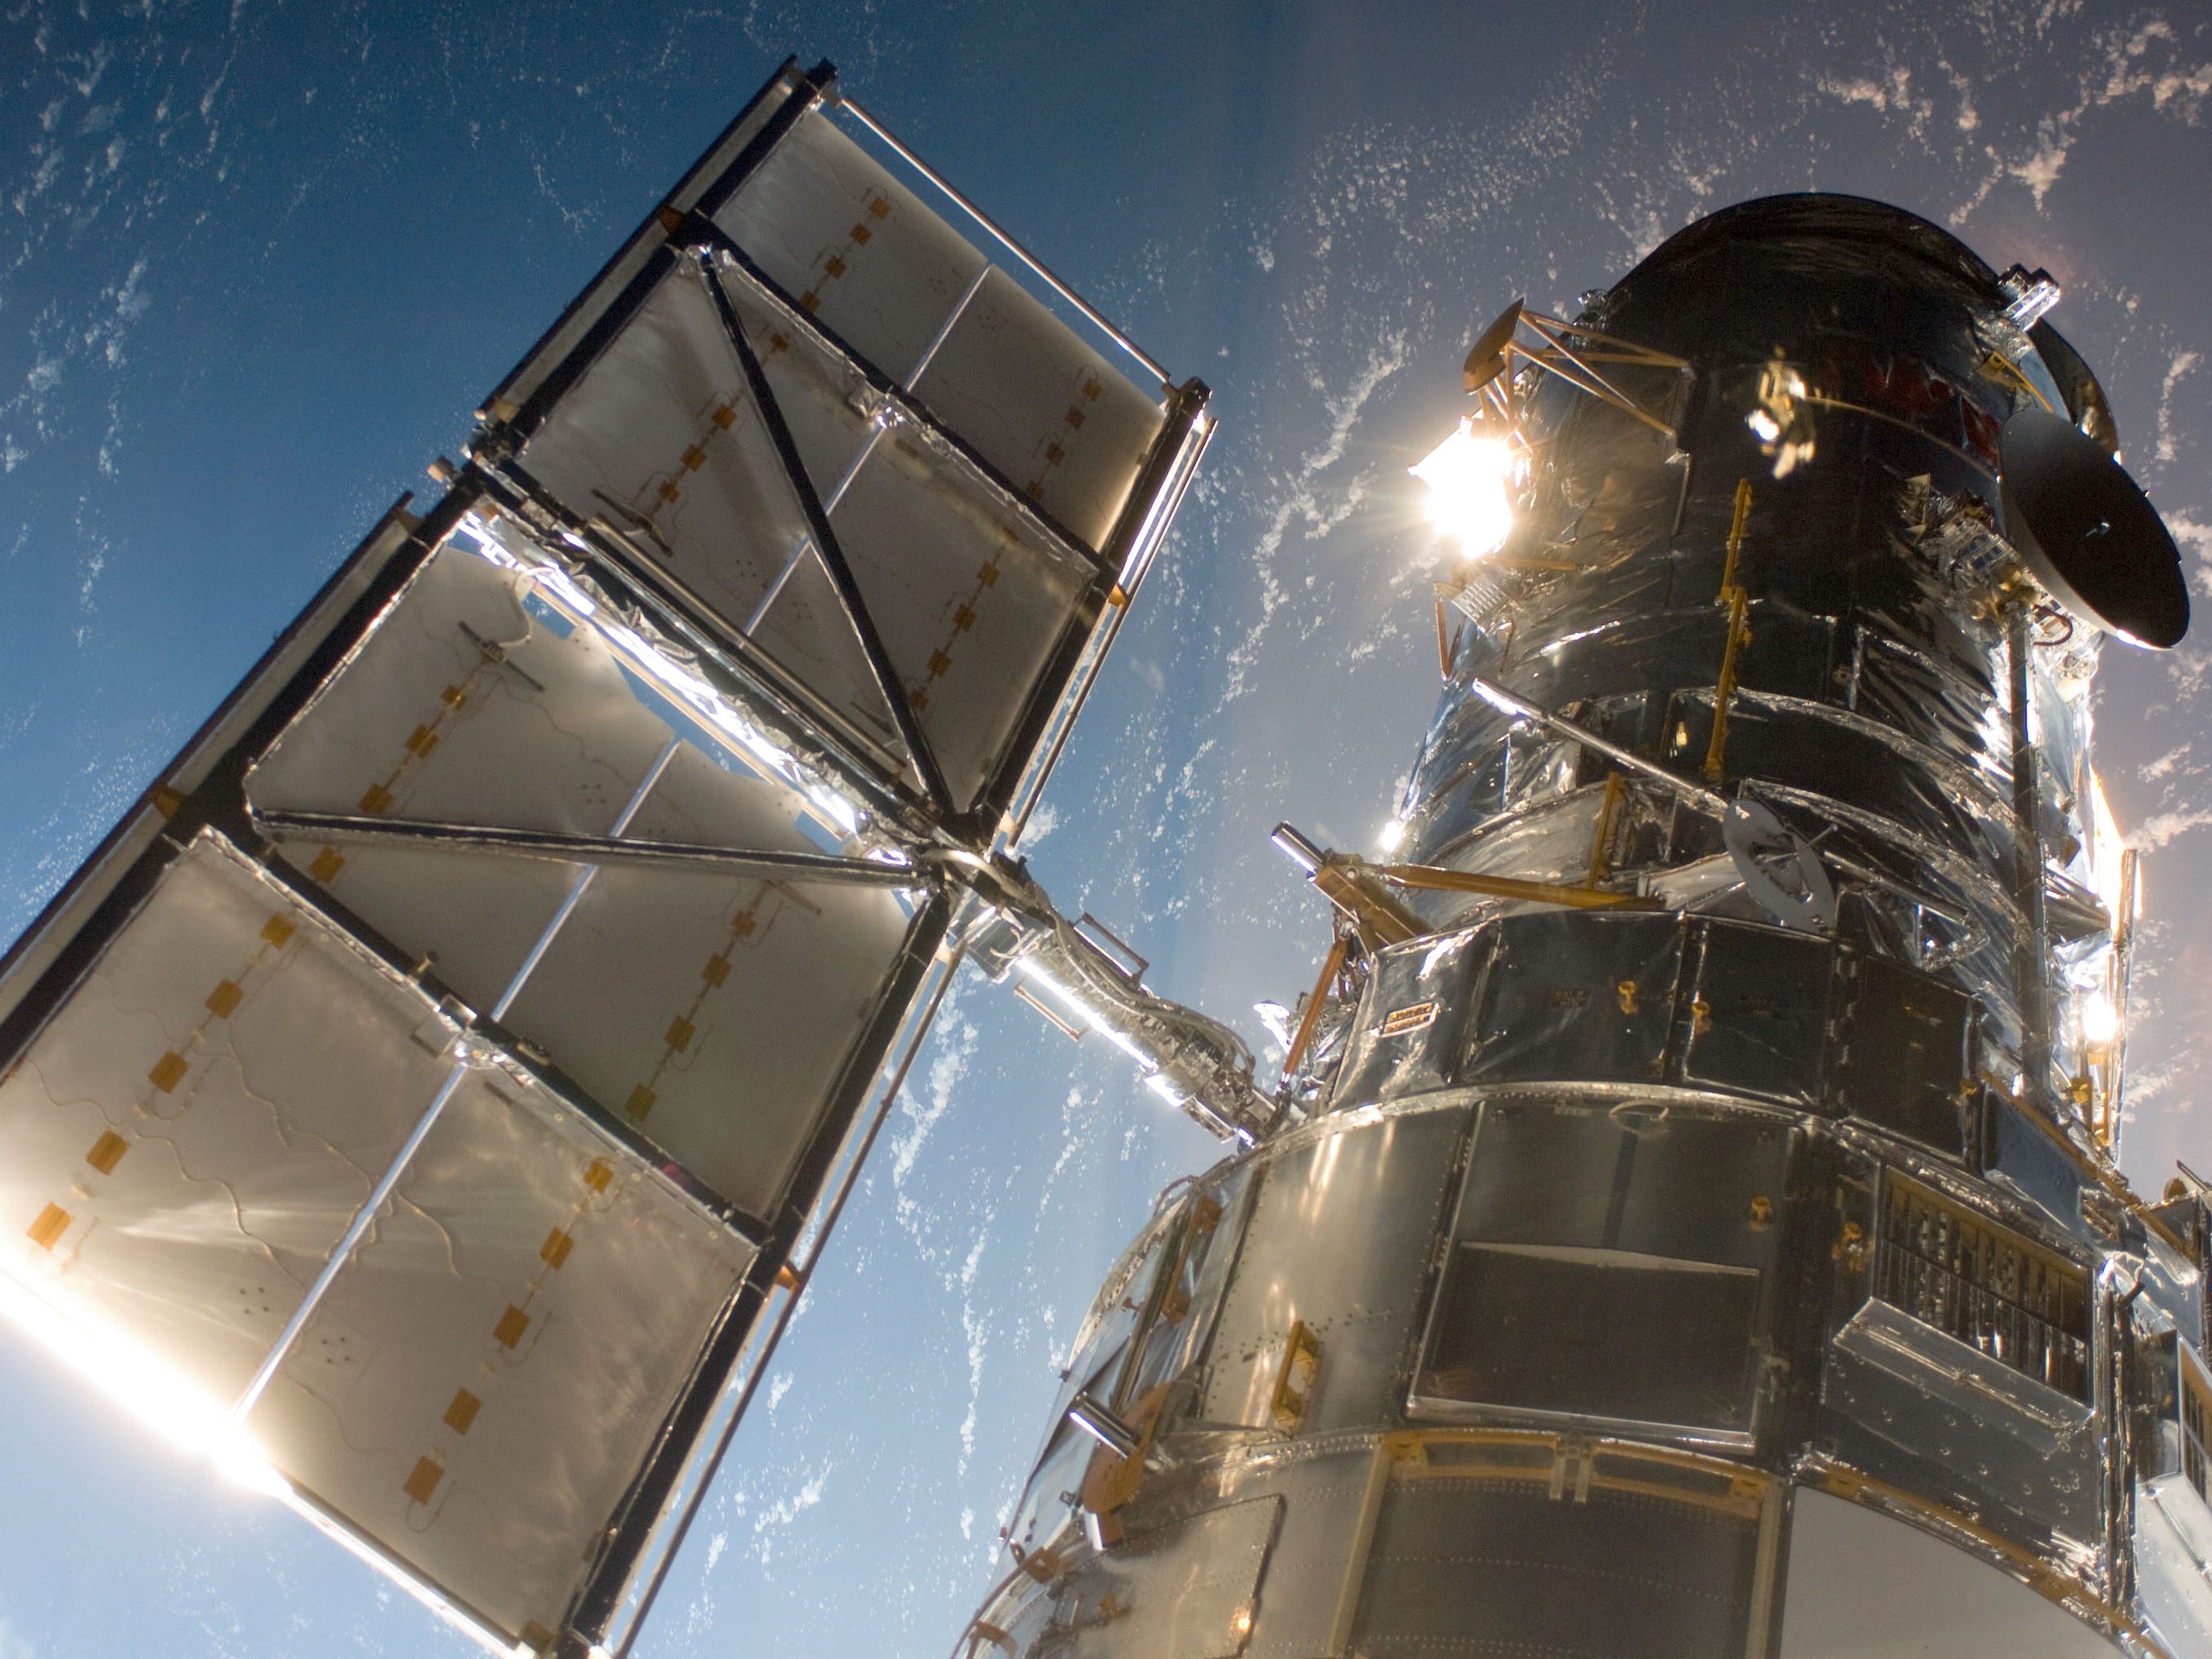 telescopio spaziale Hubble in orbita attorno alla terra